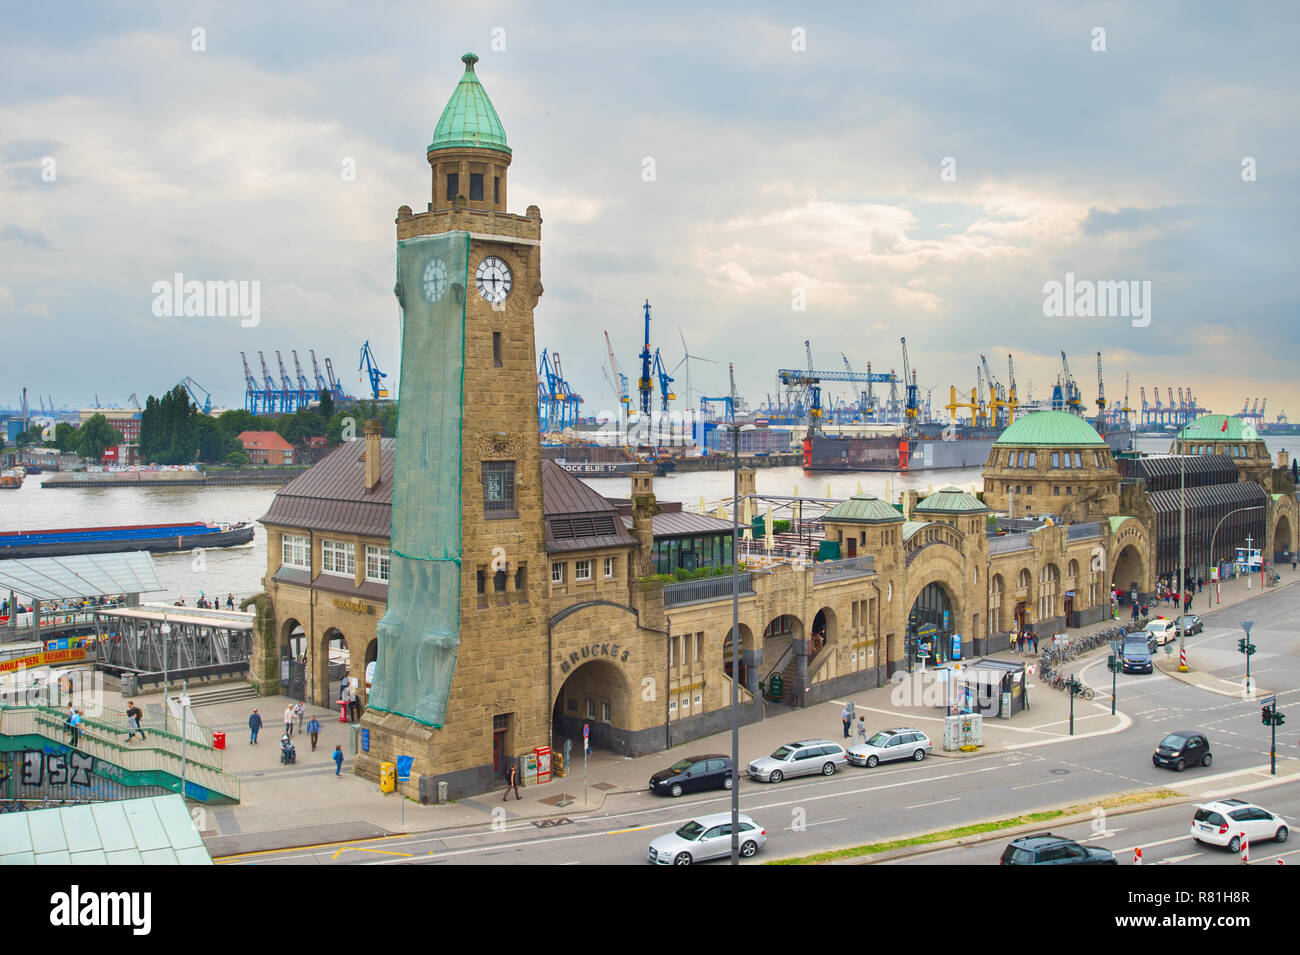 Hambourg, Allemagne - le 18 juin 2018 : les gens à l'Hambourg Landungsbrücken (gare d'eau). Hambourg est la deuxième plus grande ville d'Allemagne avec une popula Banque D'Images